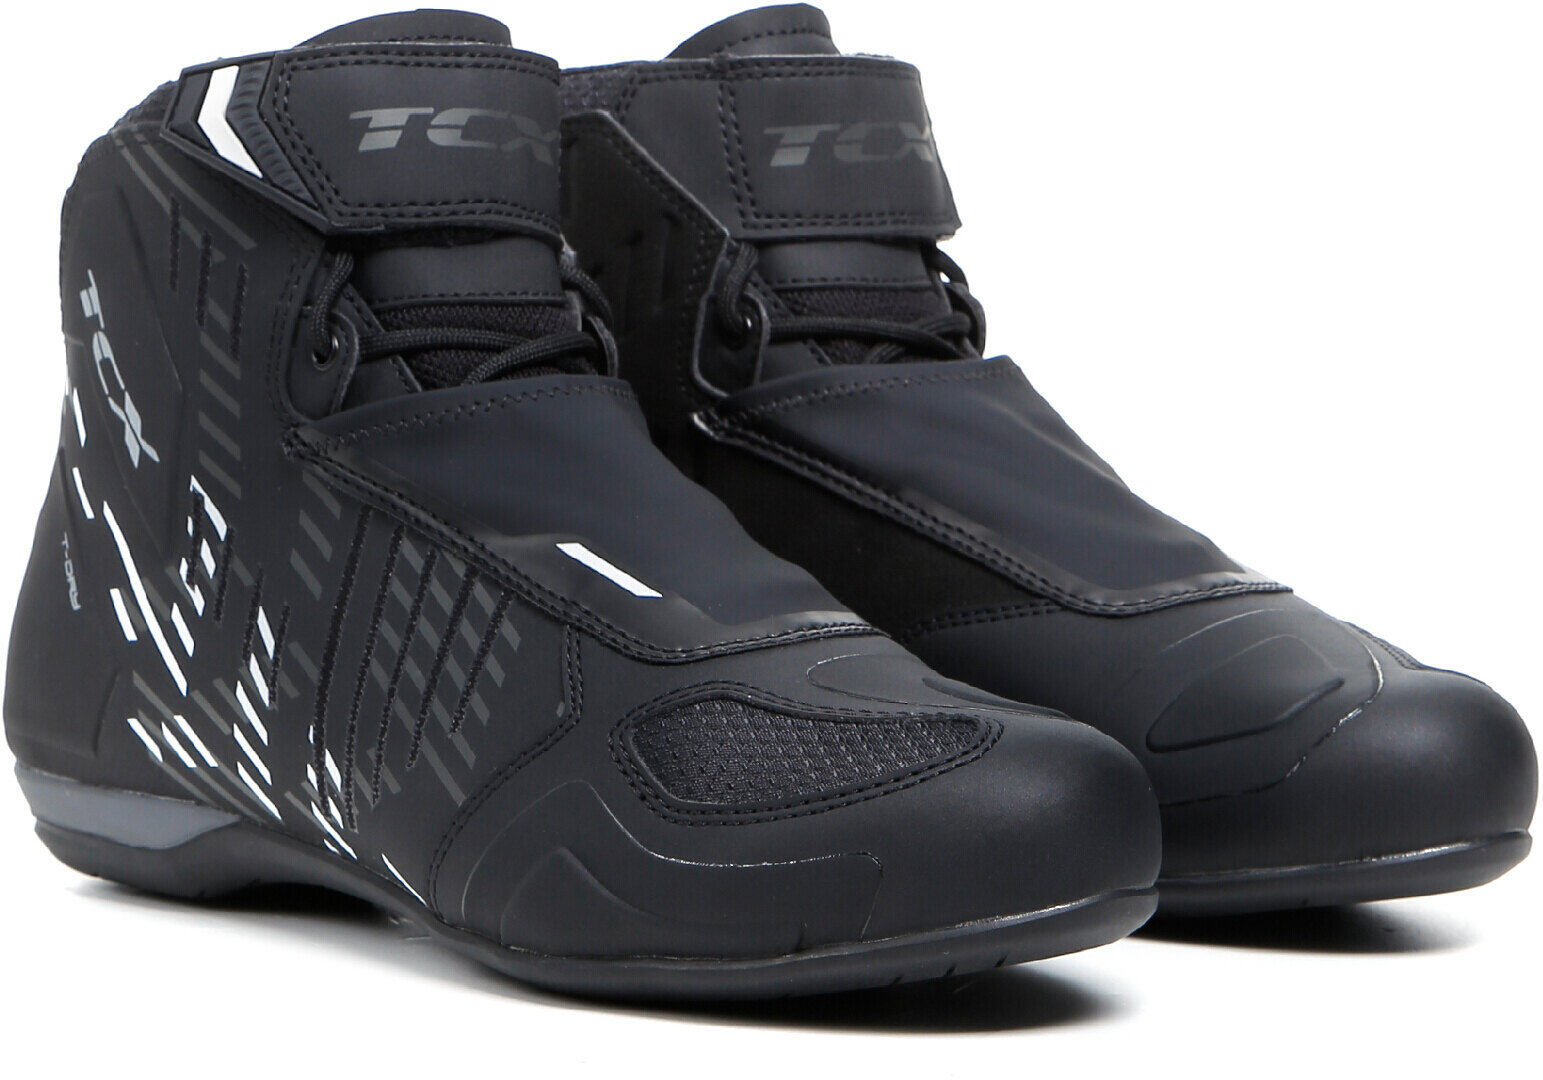 TCX RO4D WP Zapatos de motocicleta - Negro Blanco (41)